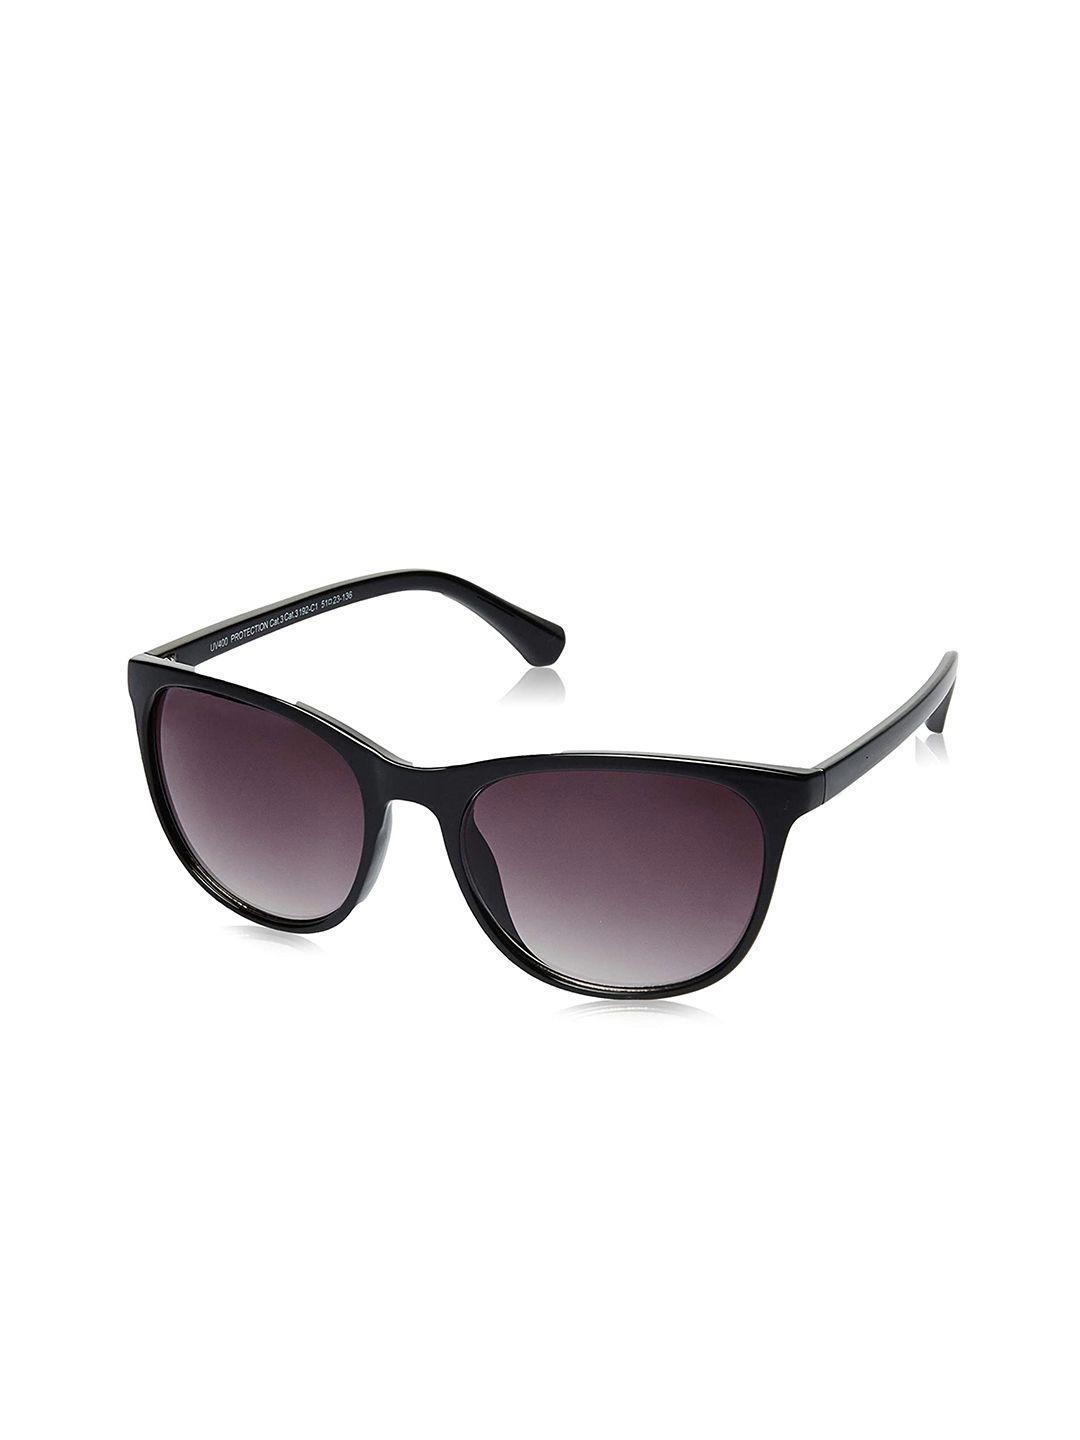 roadies wayfarer sunglasses with uv protected lens rdm-192-c1